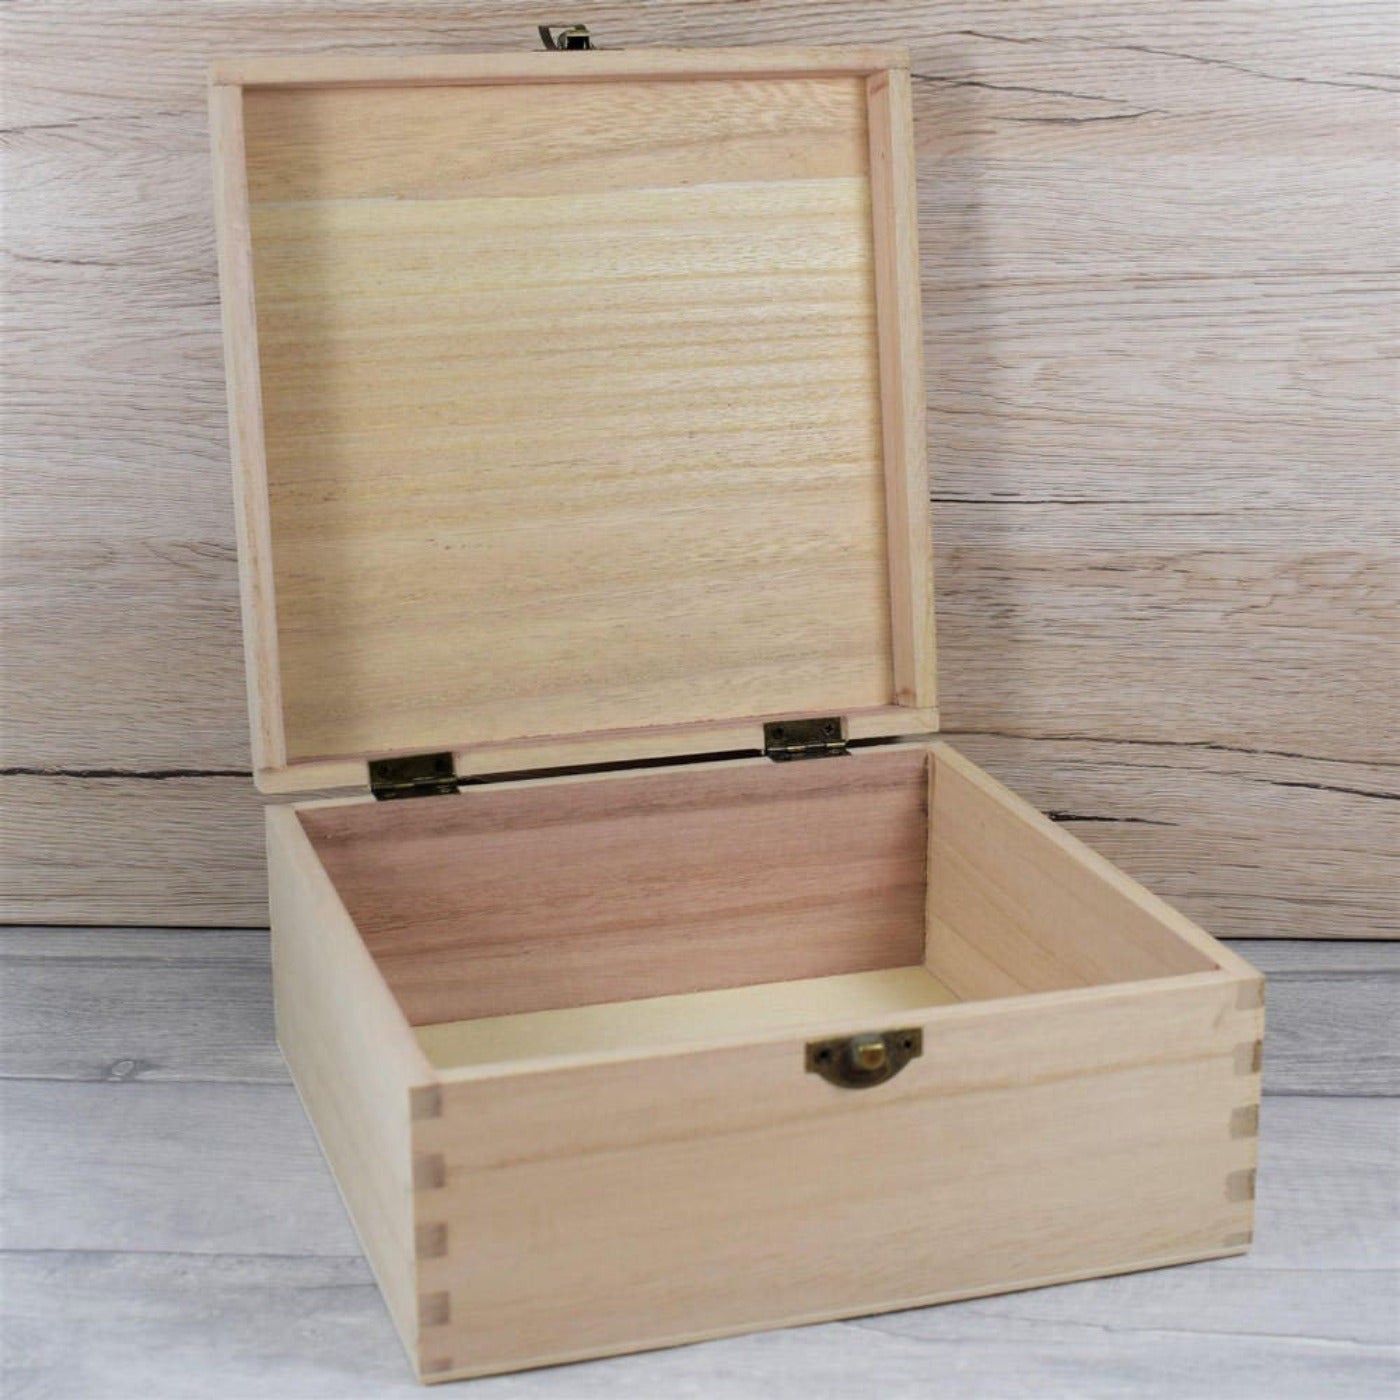 Personalised Wooden Keepsake Box - Custom Name